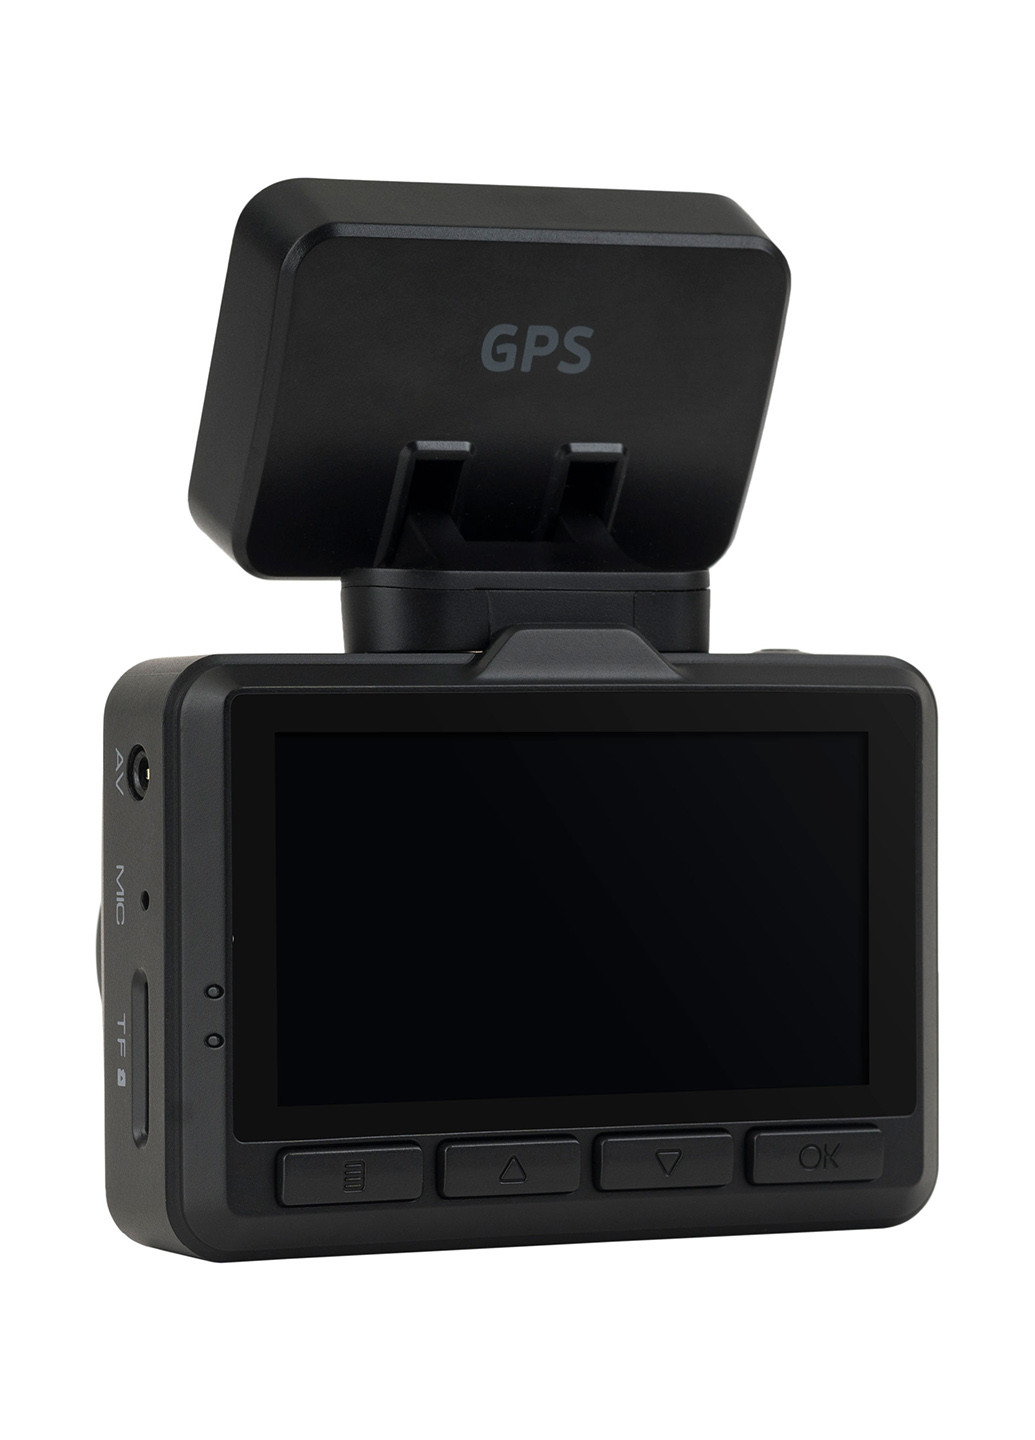 Відеореєстратор GE-305WGR Rear cam / Wi-Fi / GPS / Magnet Globex ge-305wgr rear cam/wi-fi/gps/magnet (175984560)